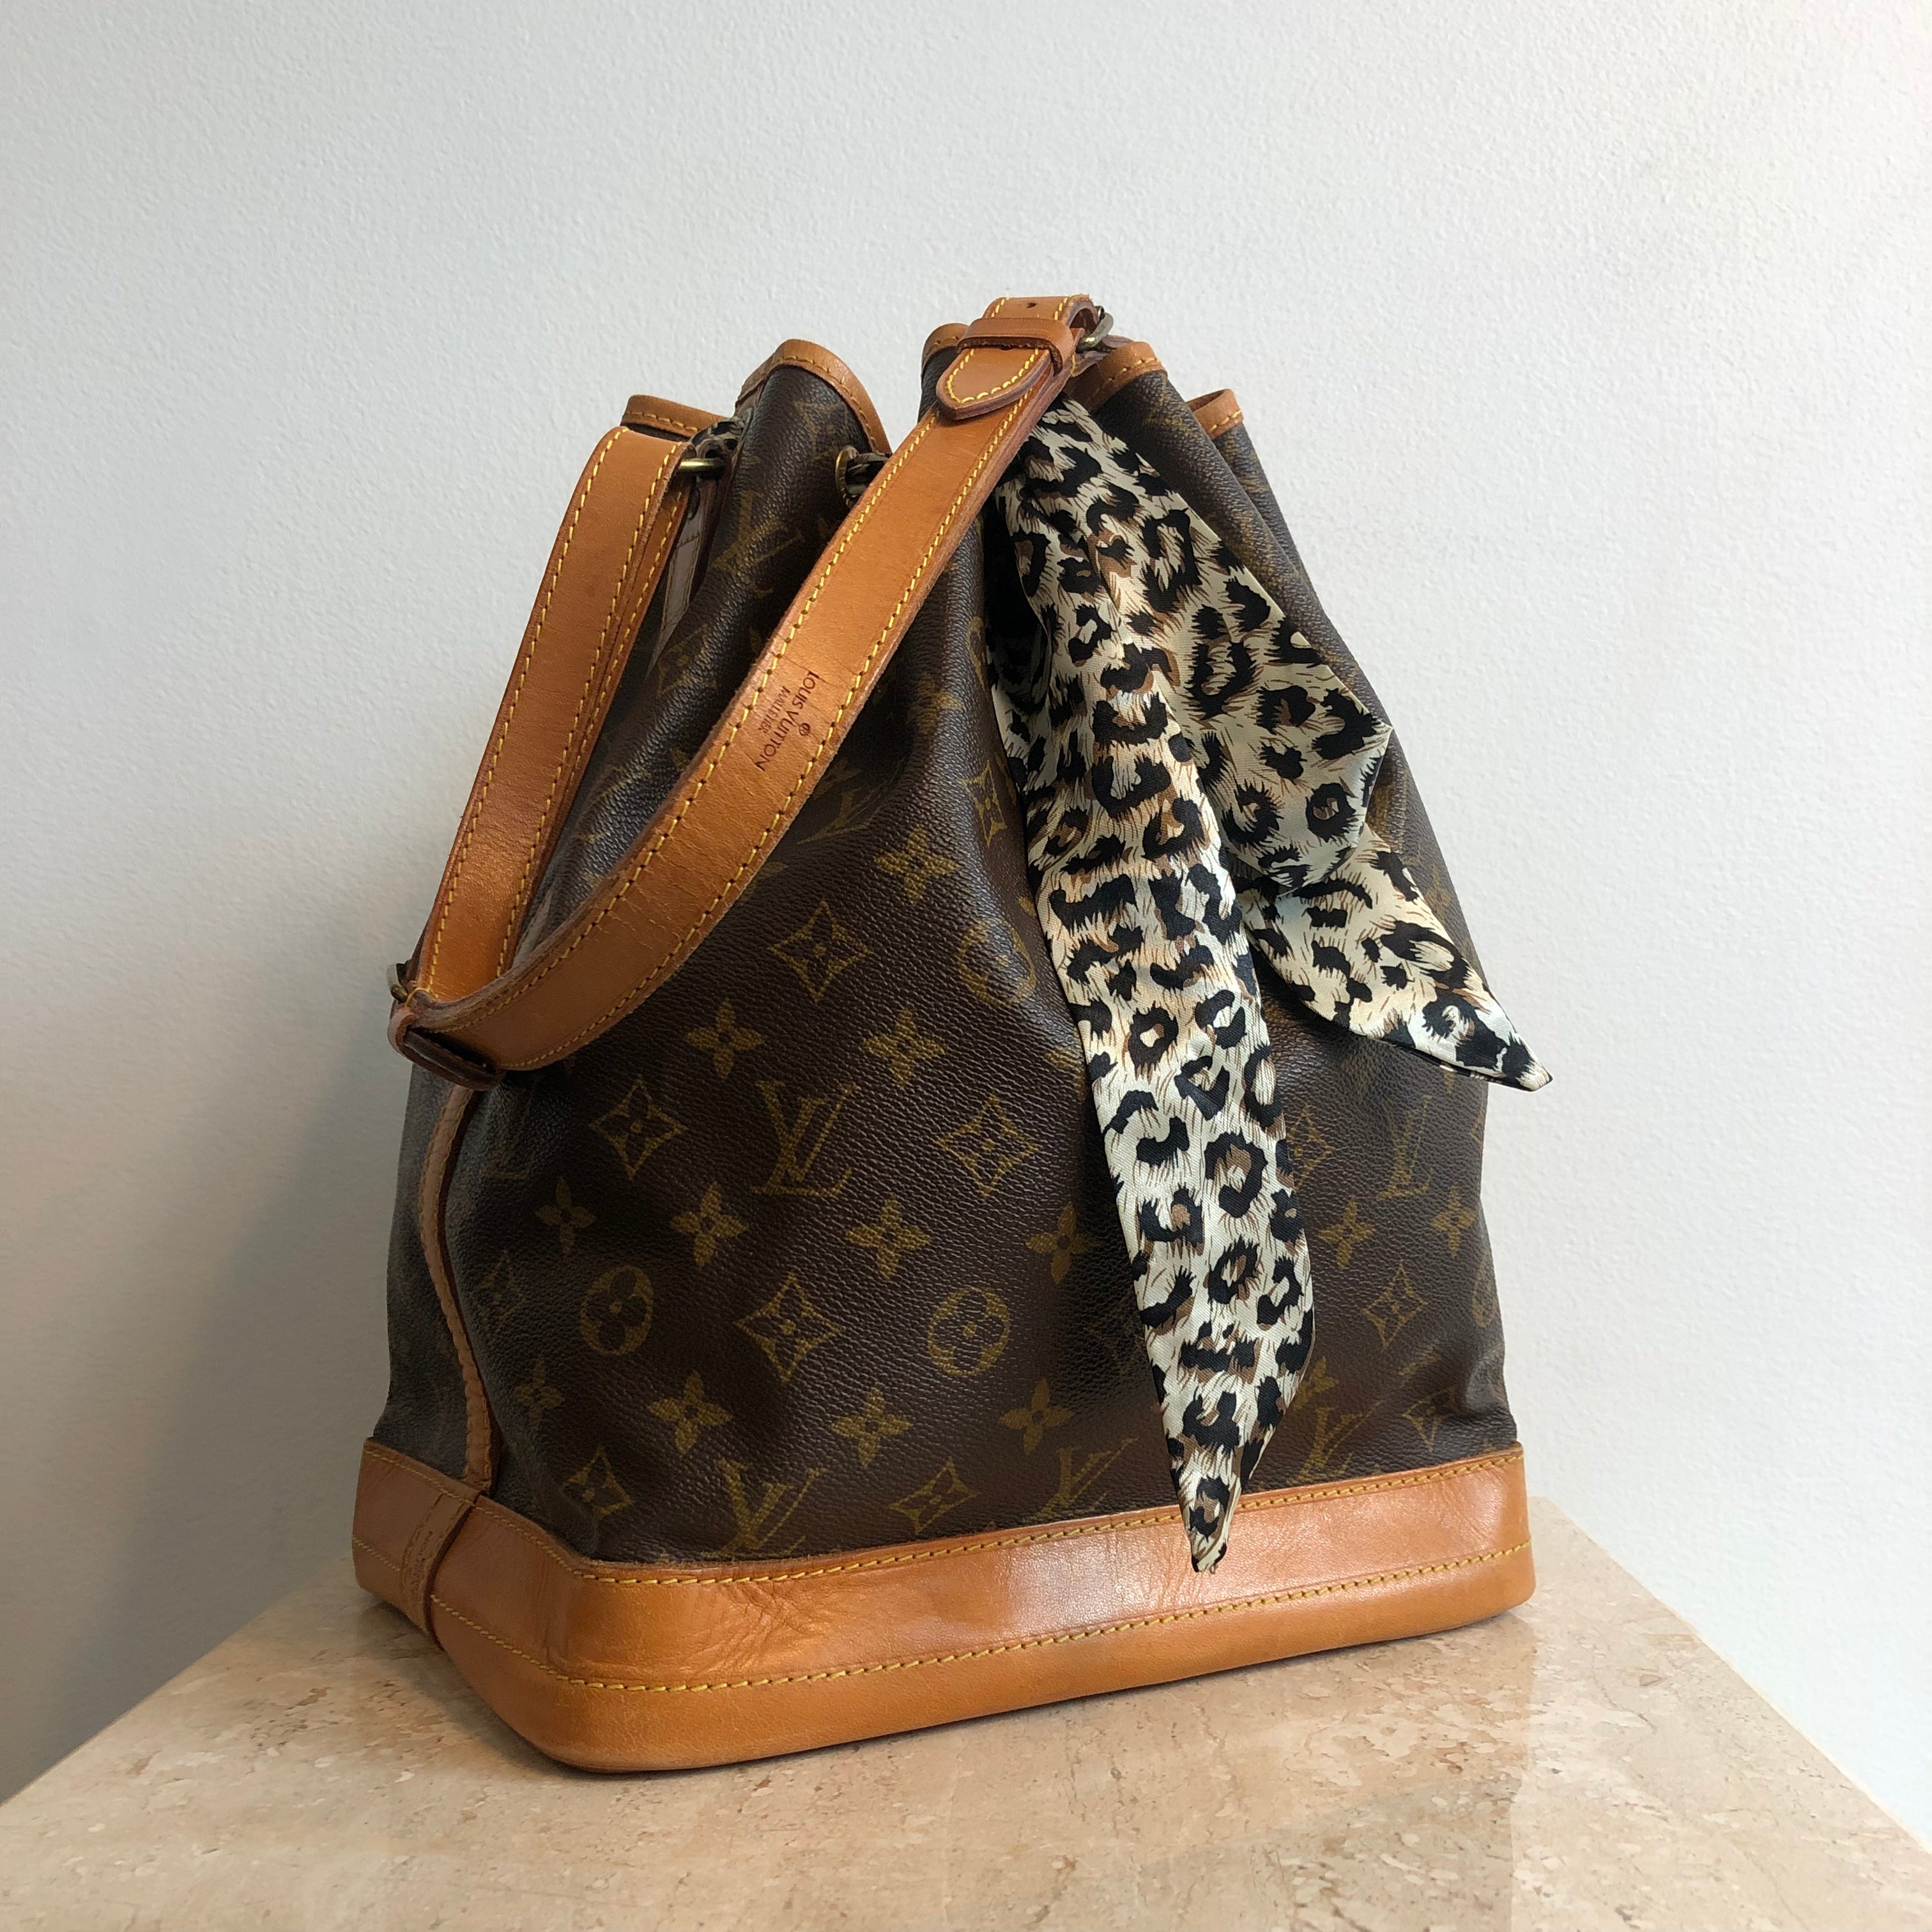 Louis Vuitton Noe GM Bag Review  YouTube